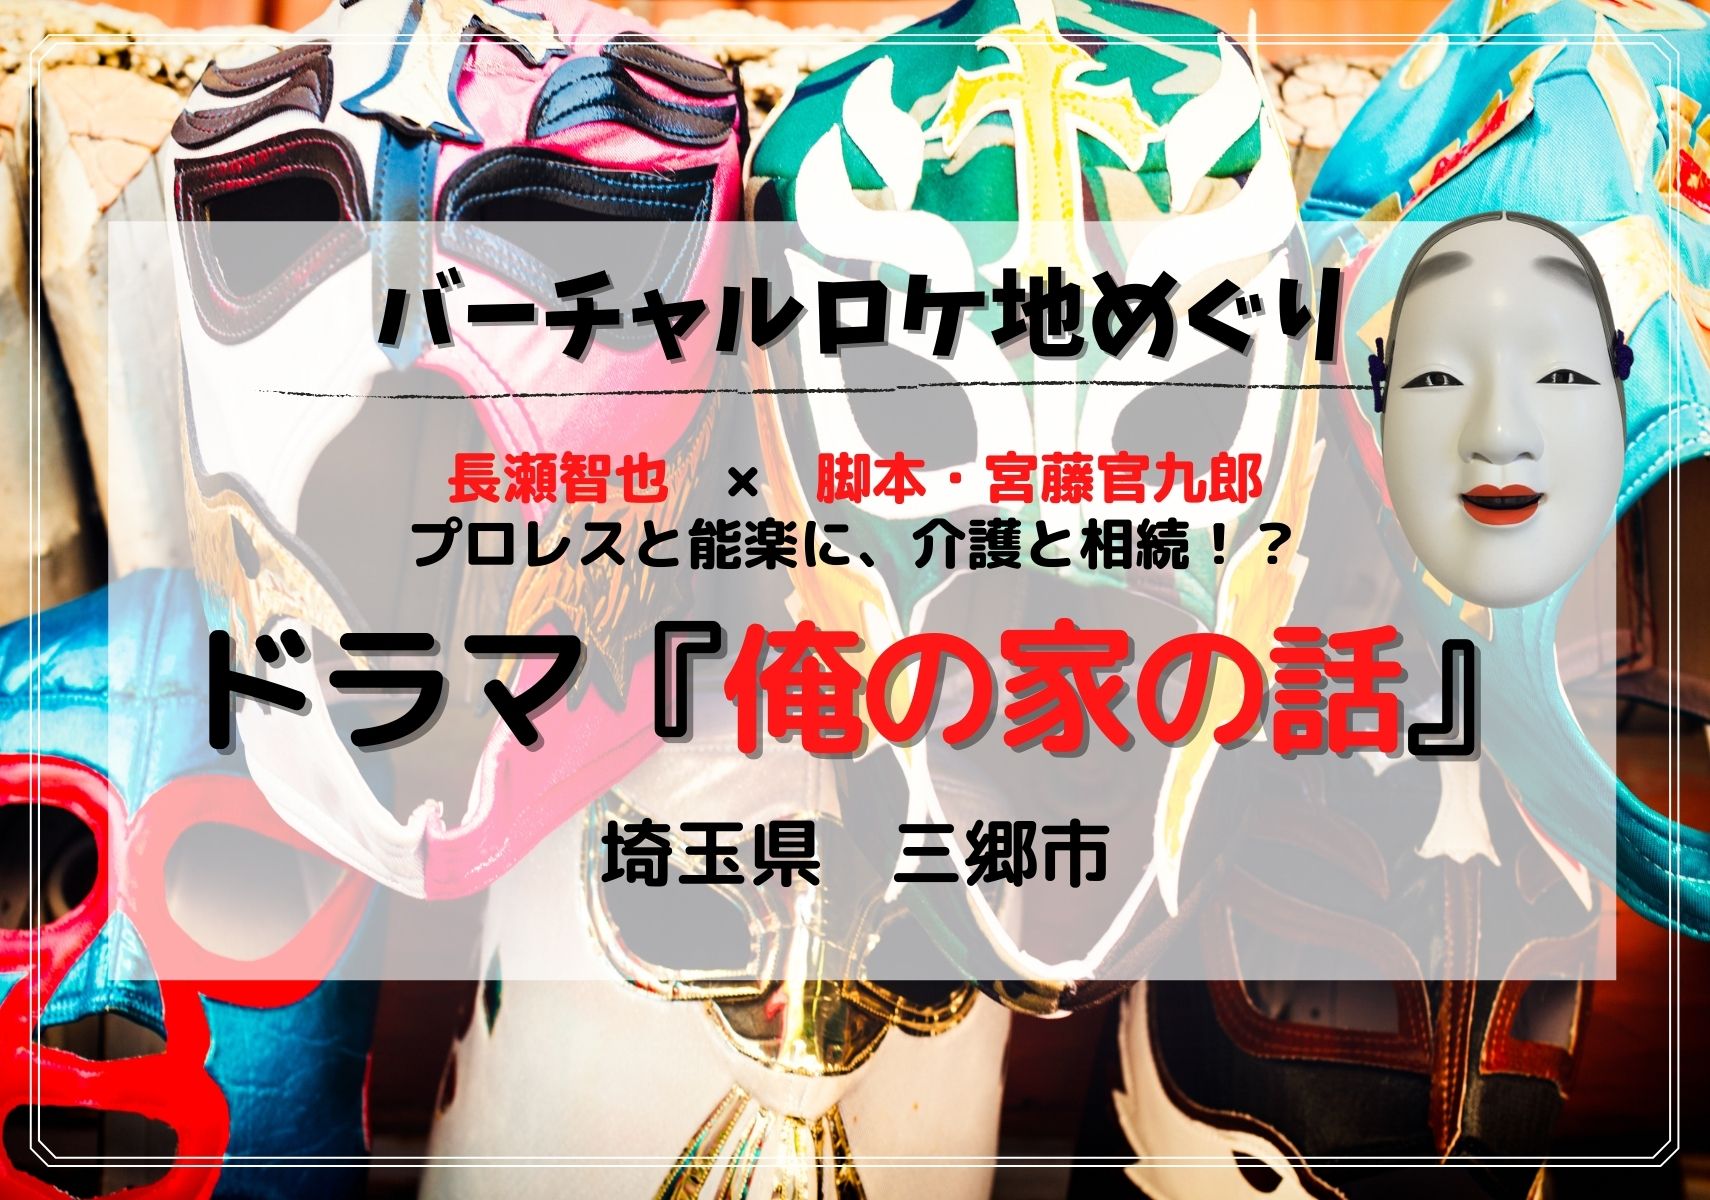 三郷市 ドラマ 俺の家の話 編 Googleマップで見られるドラマの埼玉ロケ地特集 モリスギ